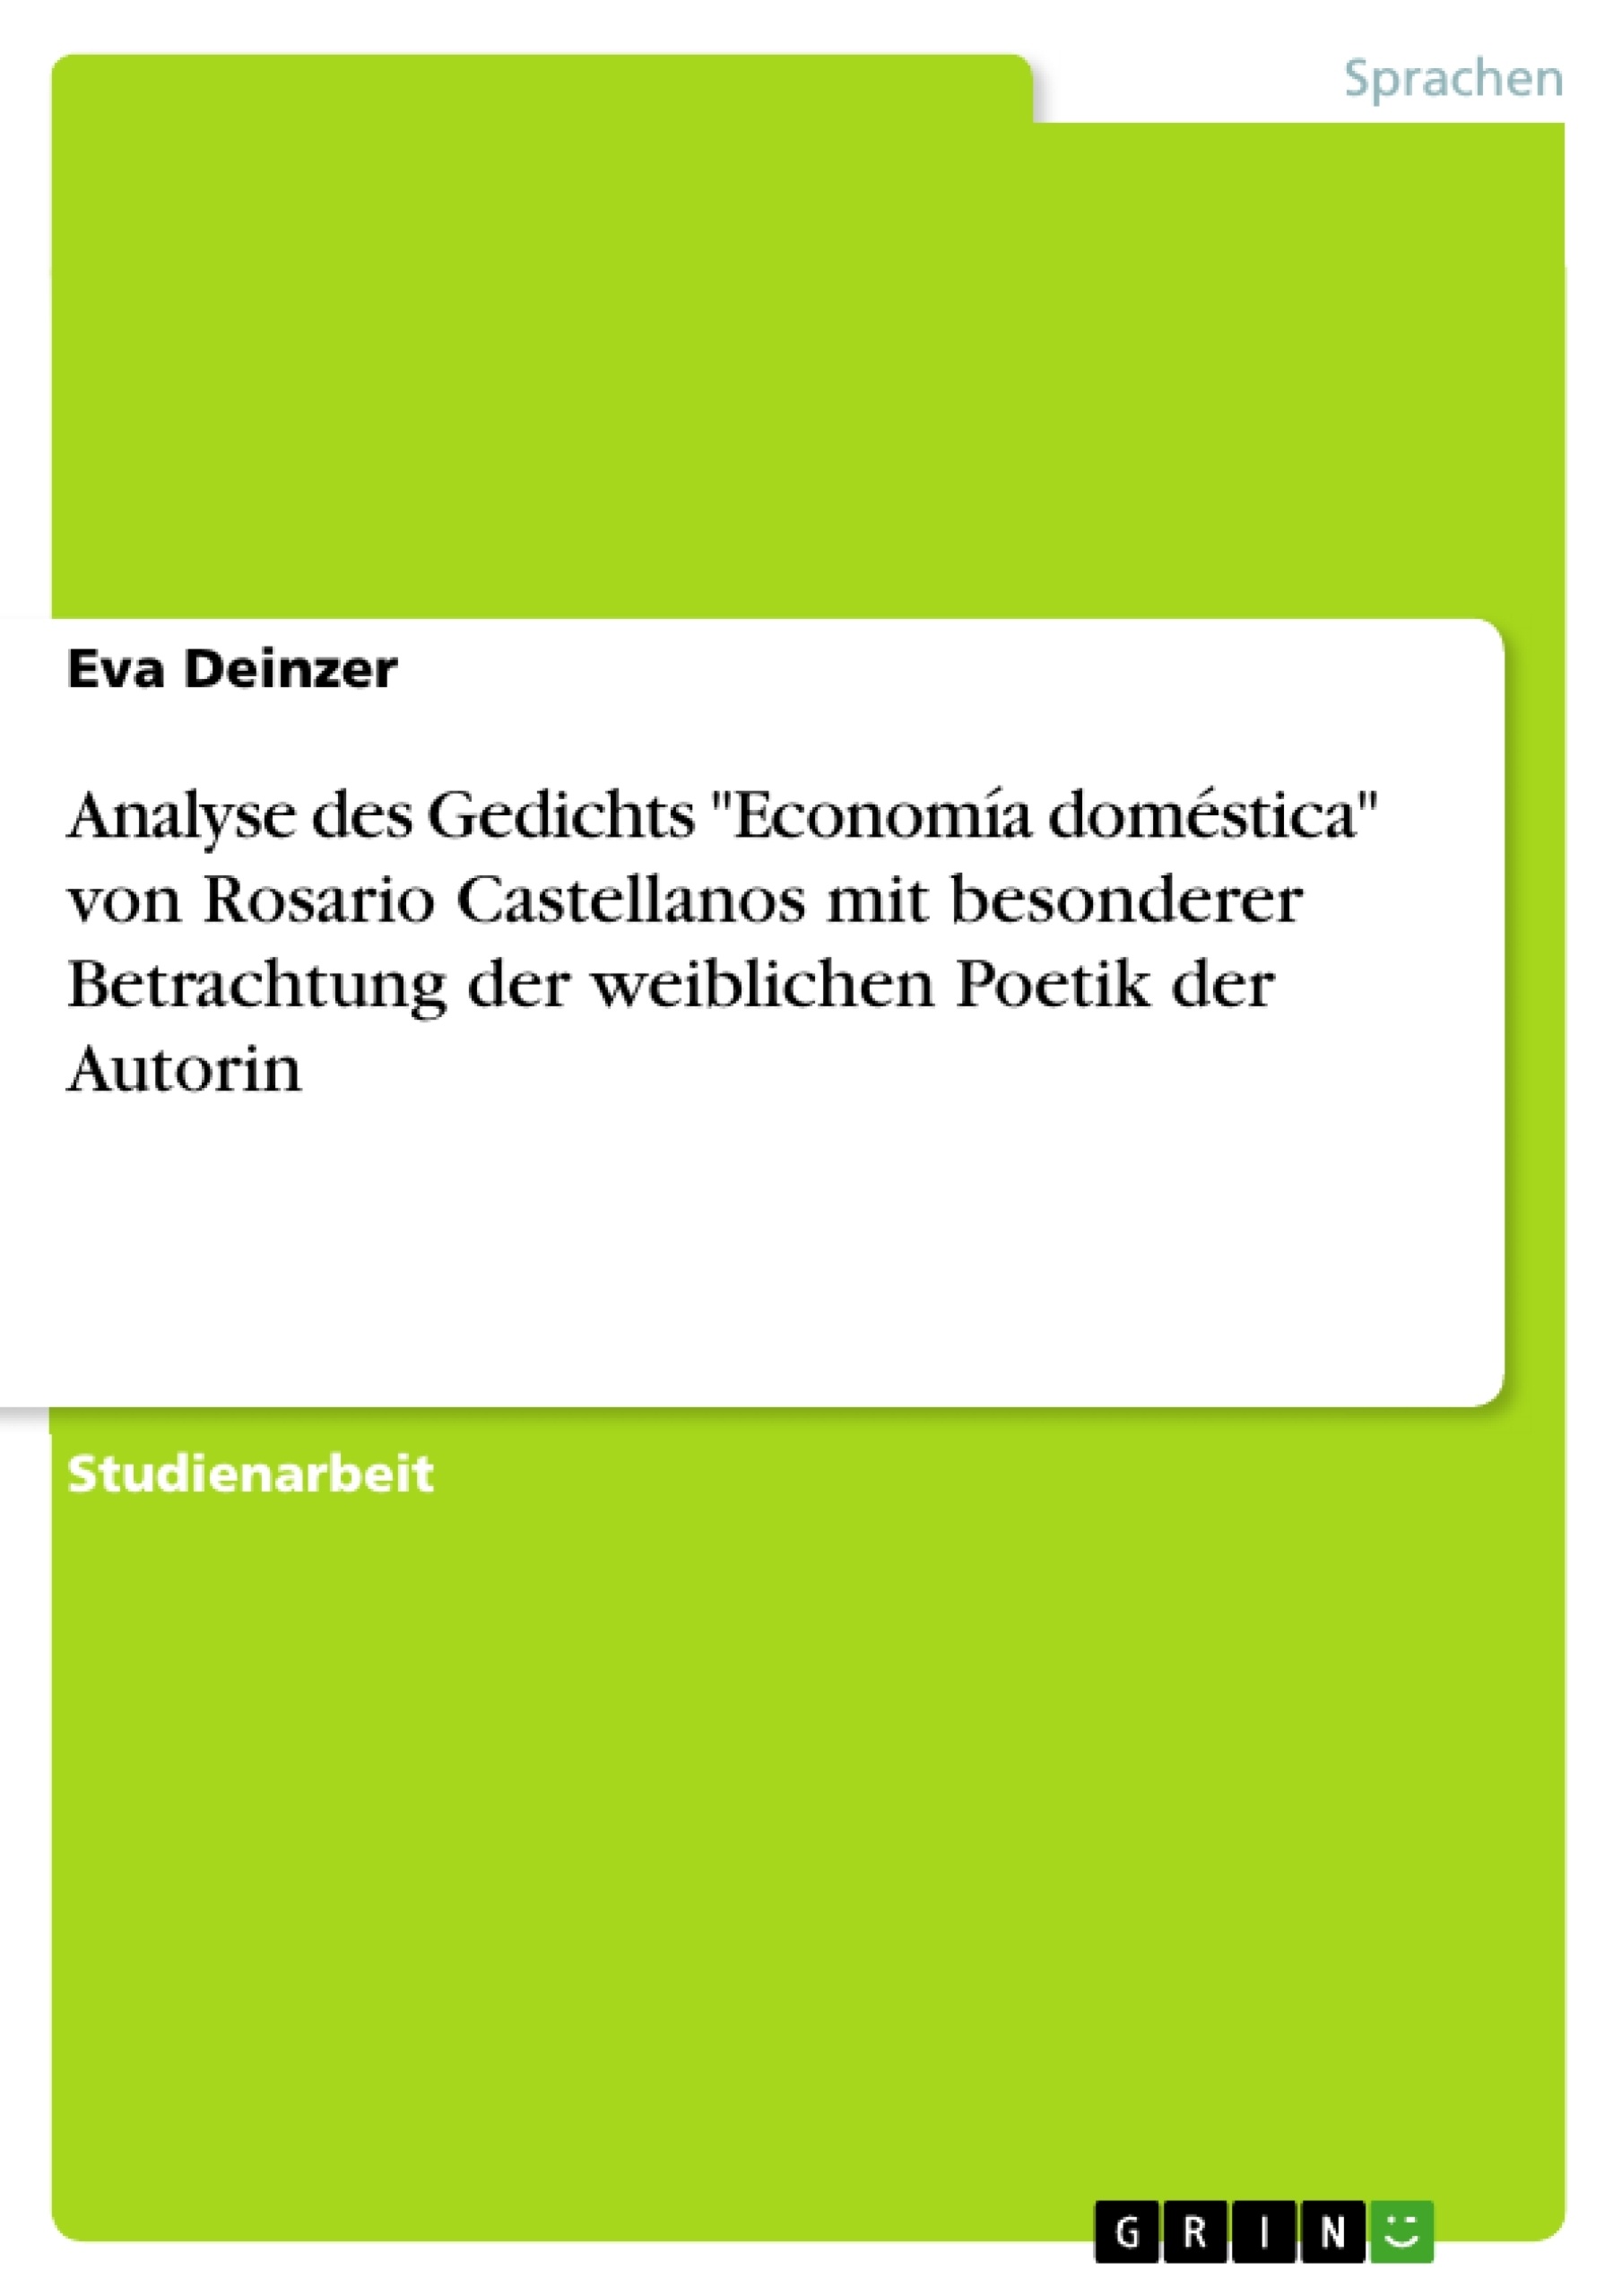 Titel: Analyse des Gedichts "Economía doméstica" von Rosario Castellanos mit besonderer Betrachtung der weiblichen Poetik der Autorin